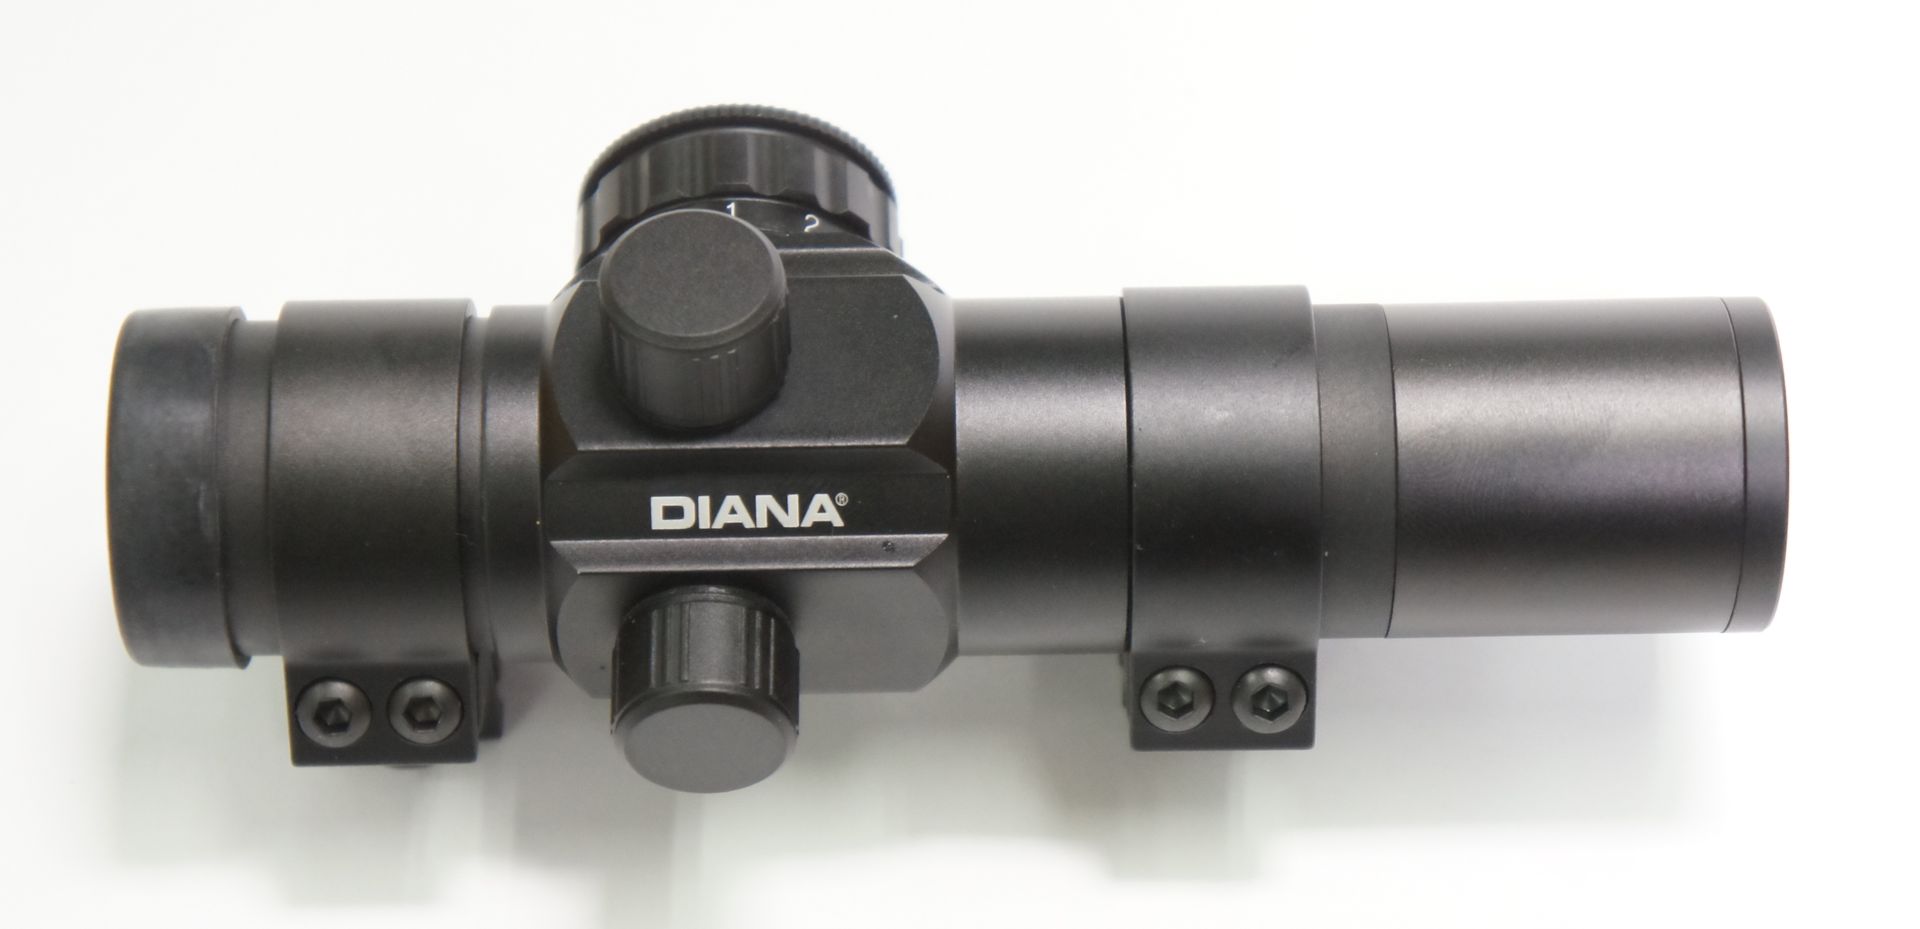 Das Diana Red Dot, Leuchtpunktvisier 1x30, 5 MOA  kann mit der beiliegenden Sonnenblende noch etwas verlängert werden.